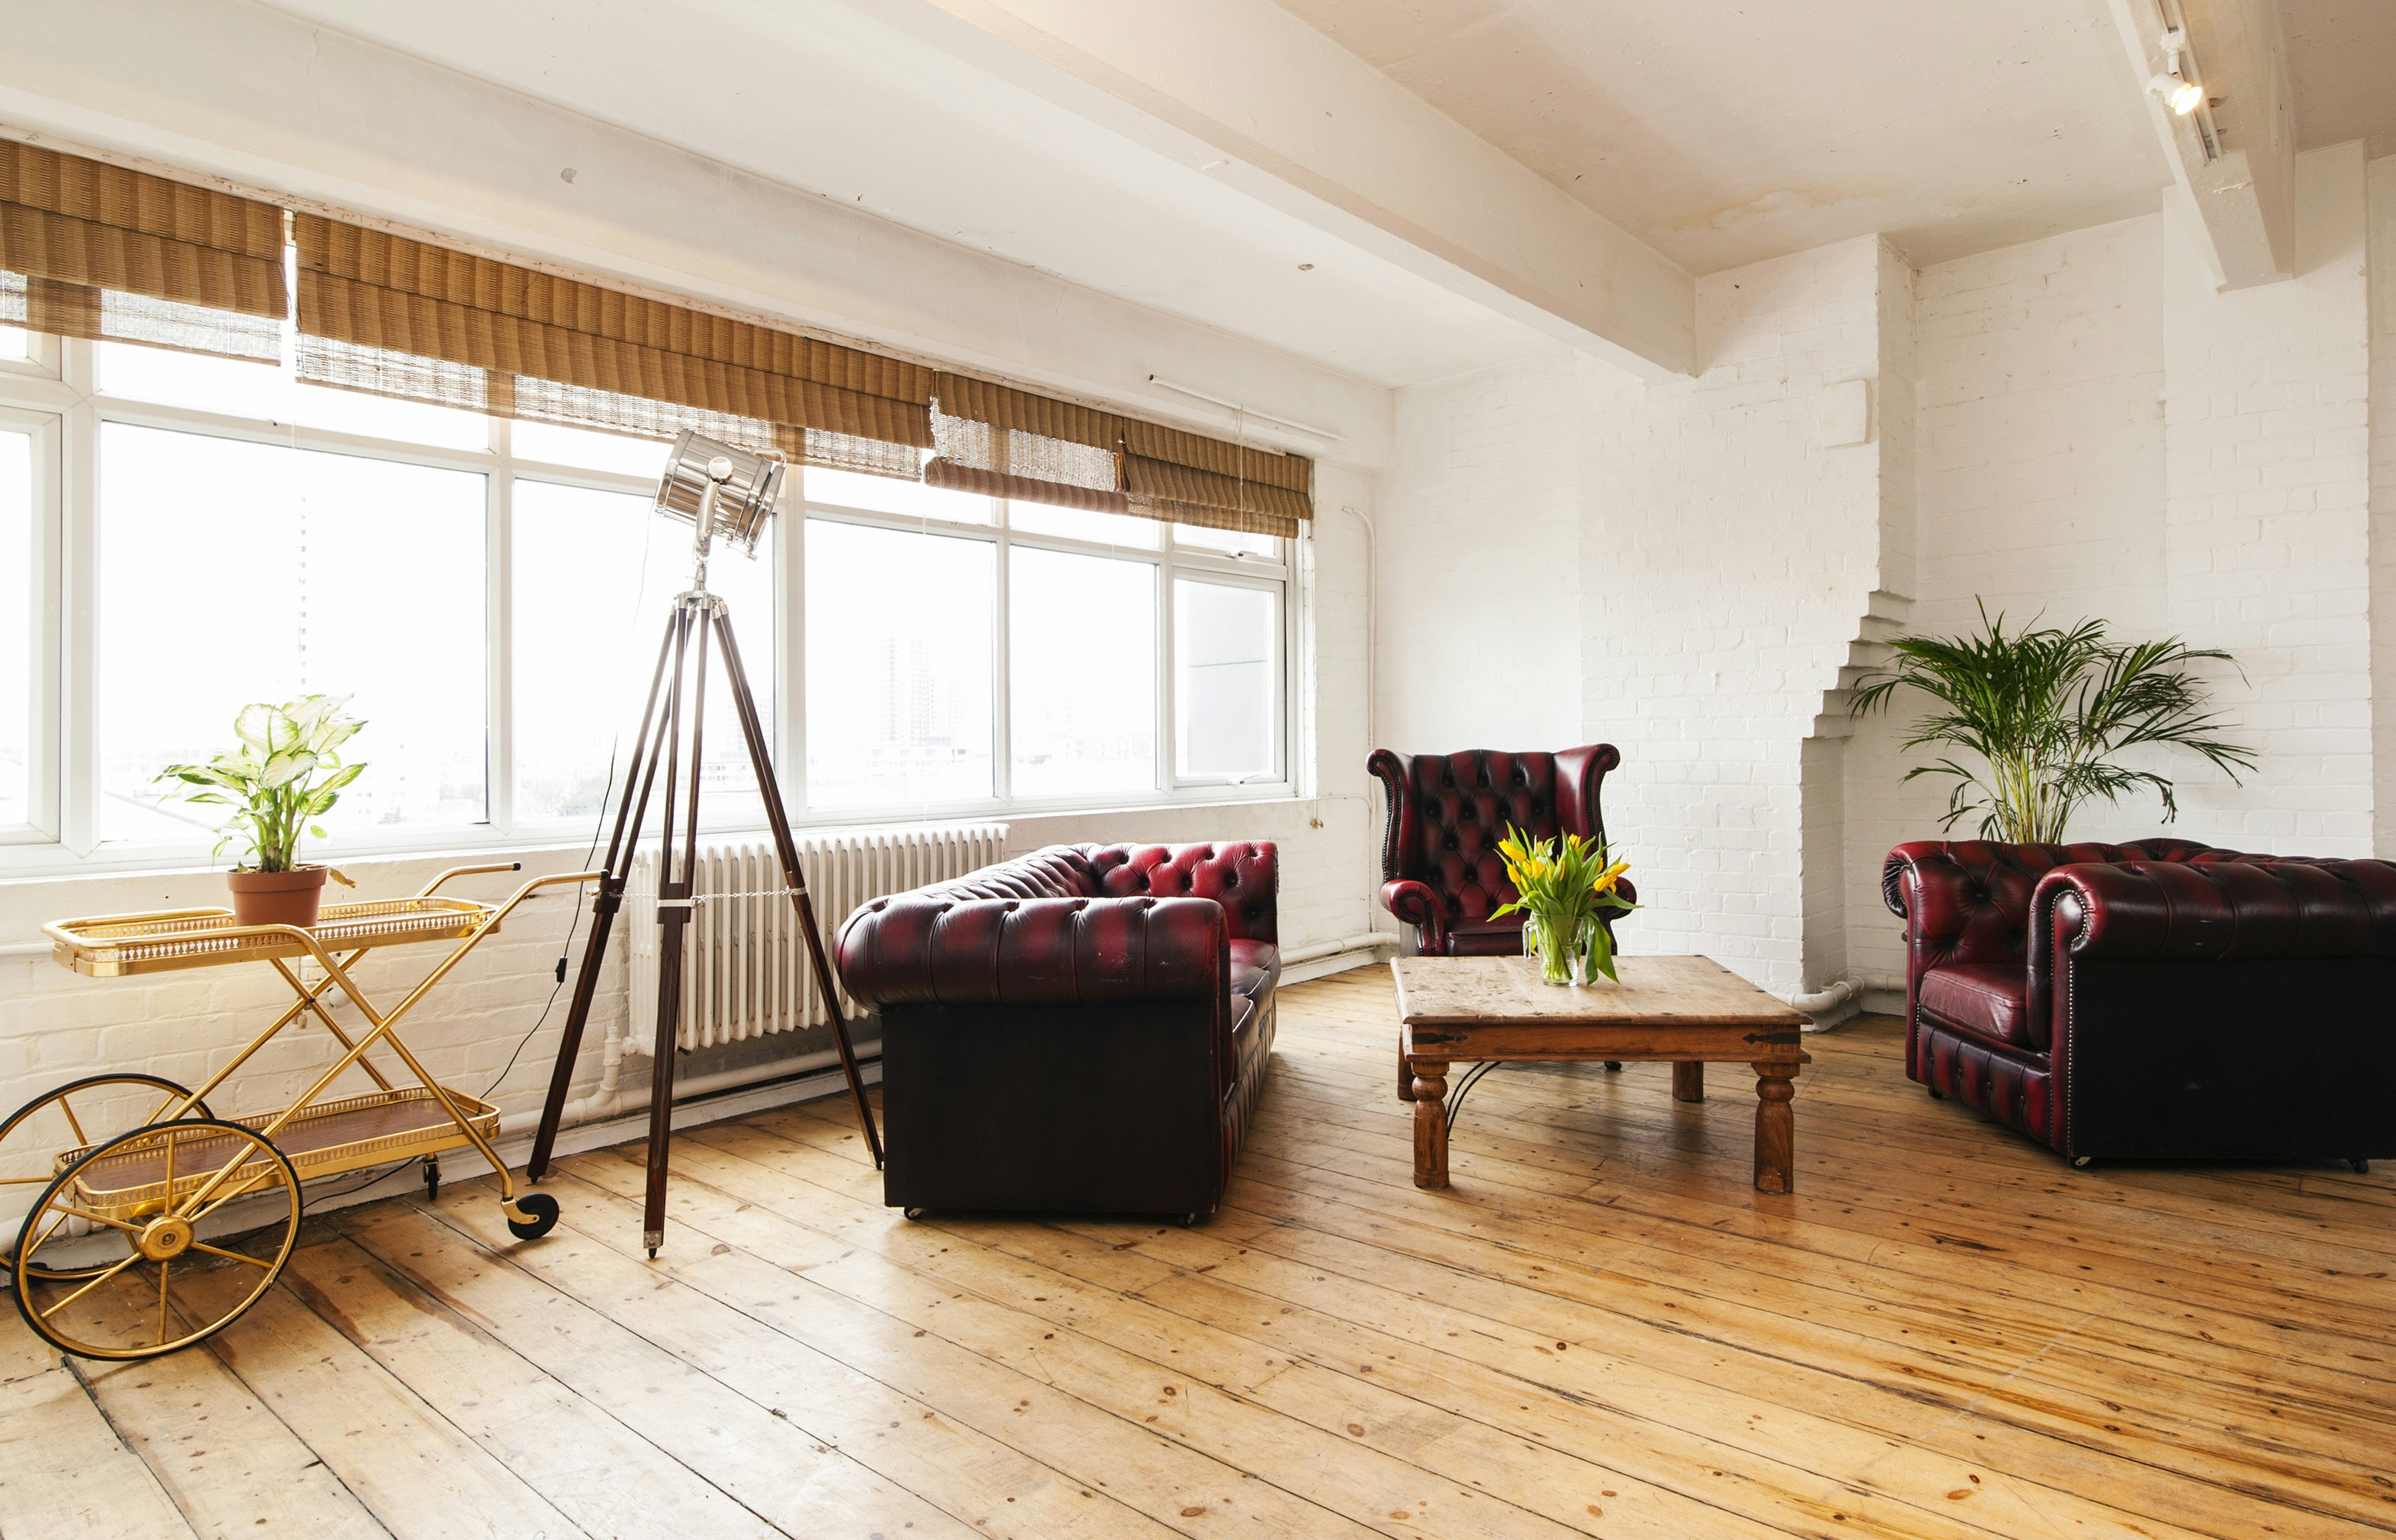 Filming Locations Venues in West London - 4th Floor Studios